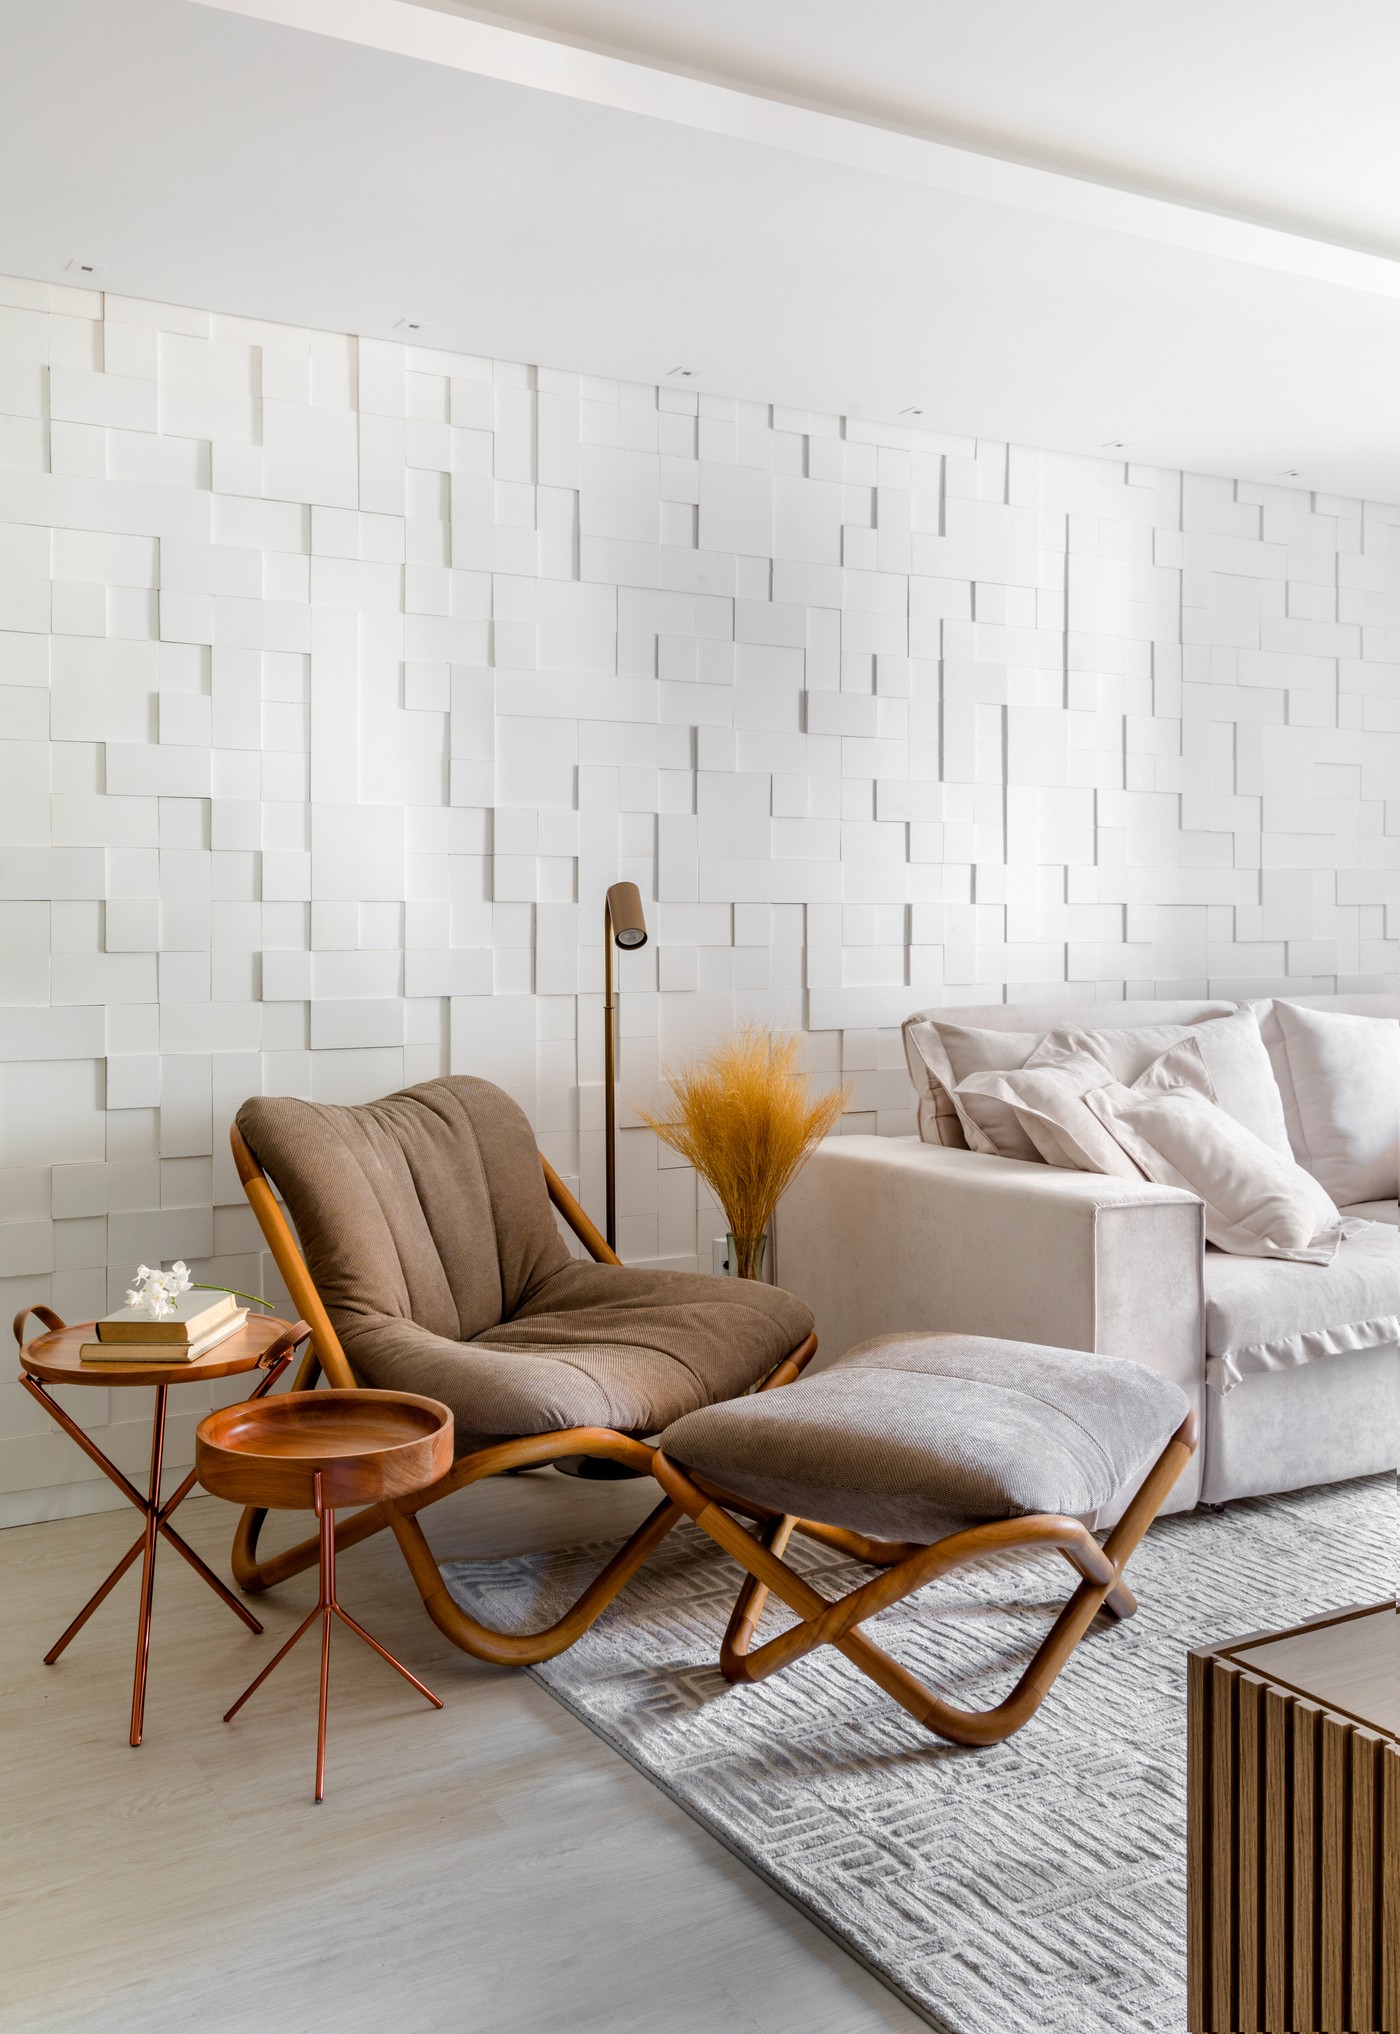 Décor do dia: sala de estar tem paleta  neutra e parede com textura (Foto: Fábio Junior Severo)